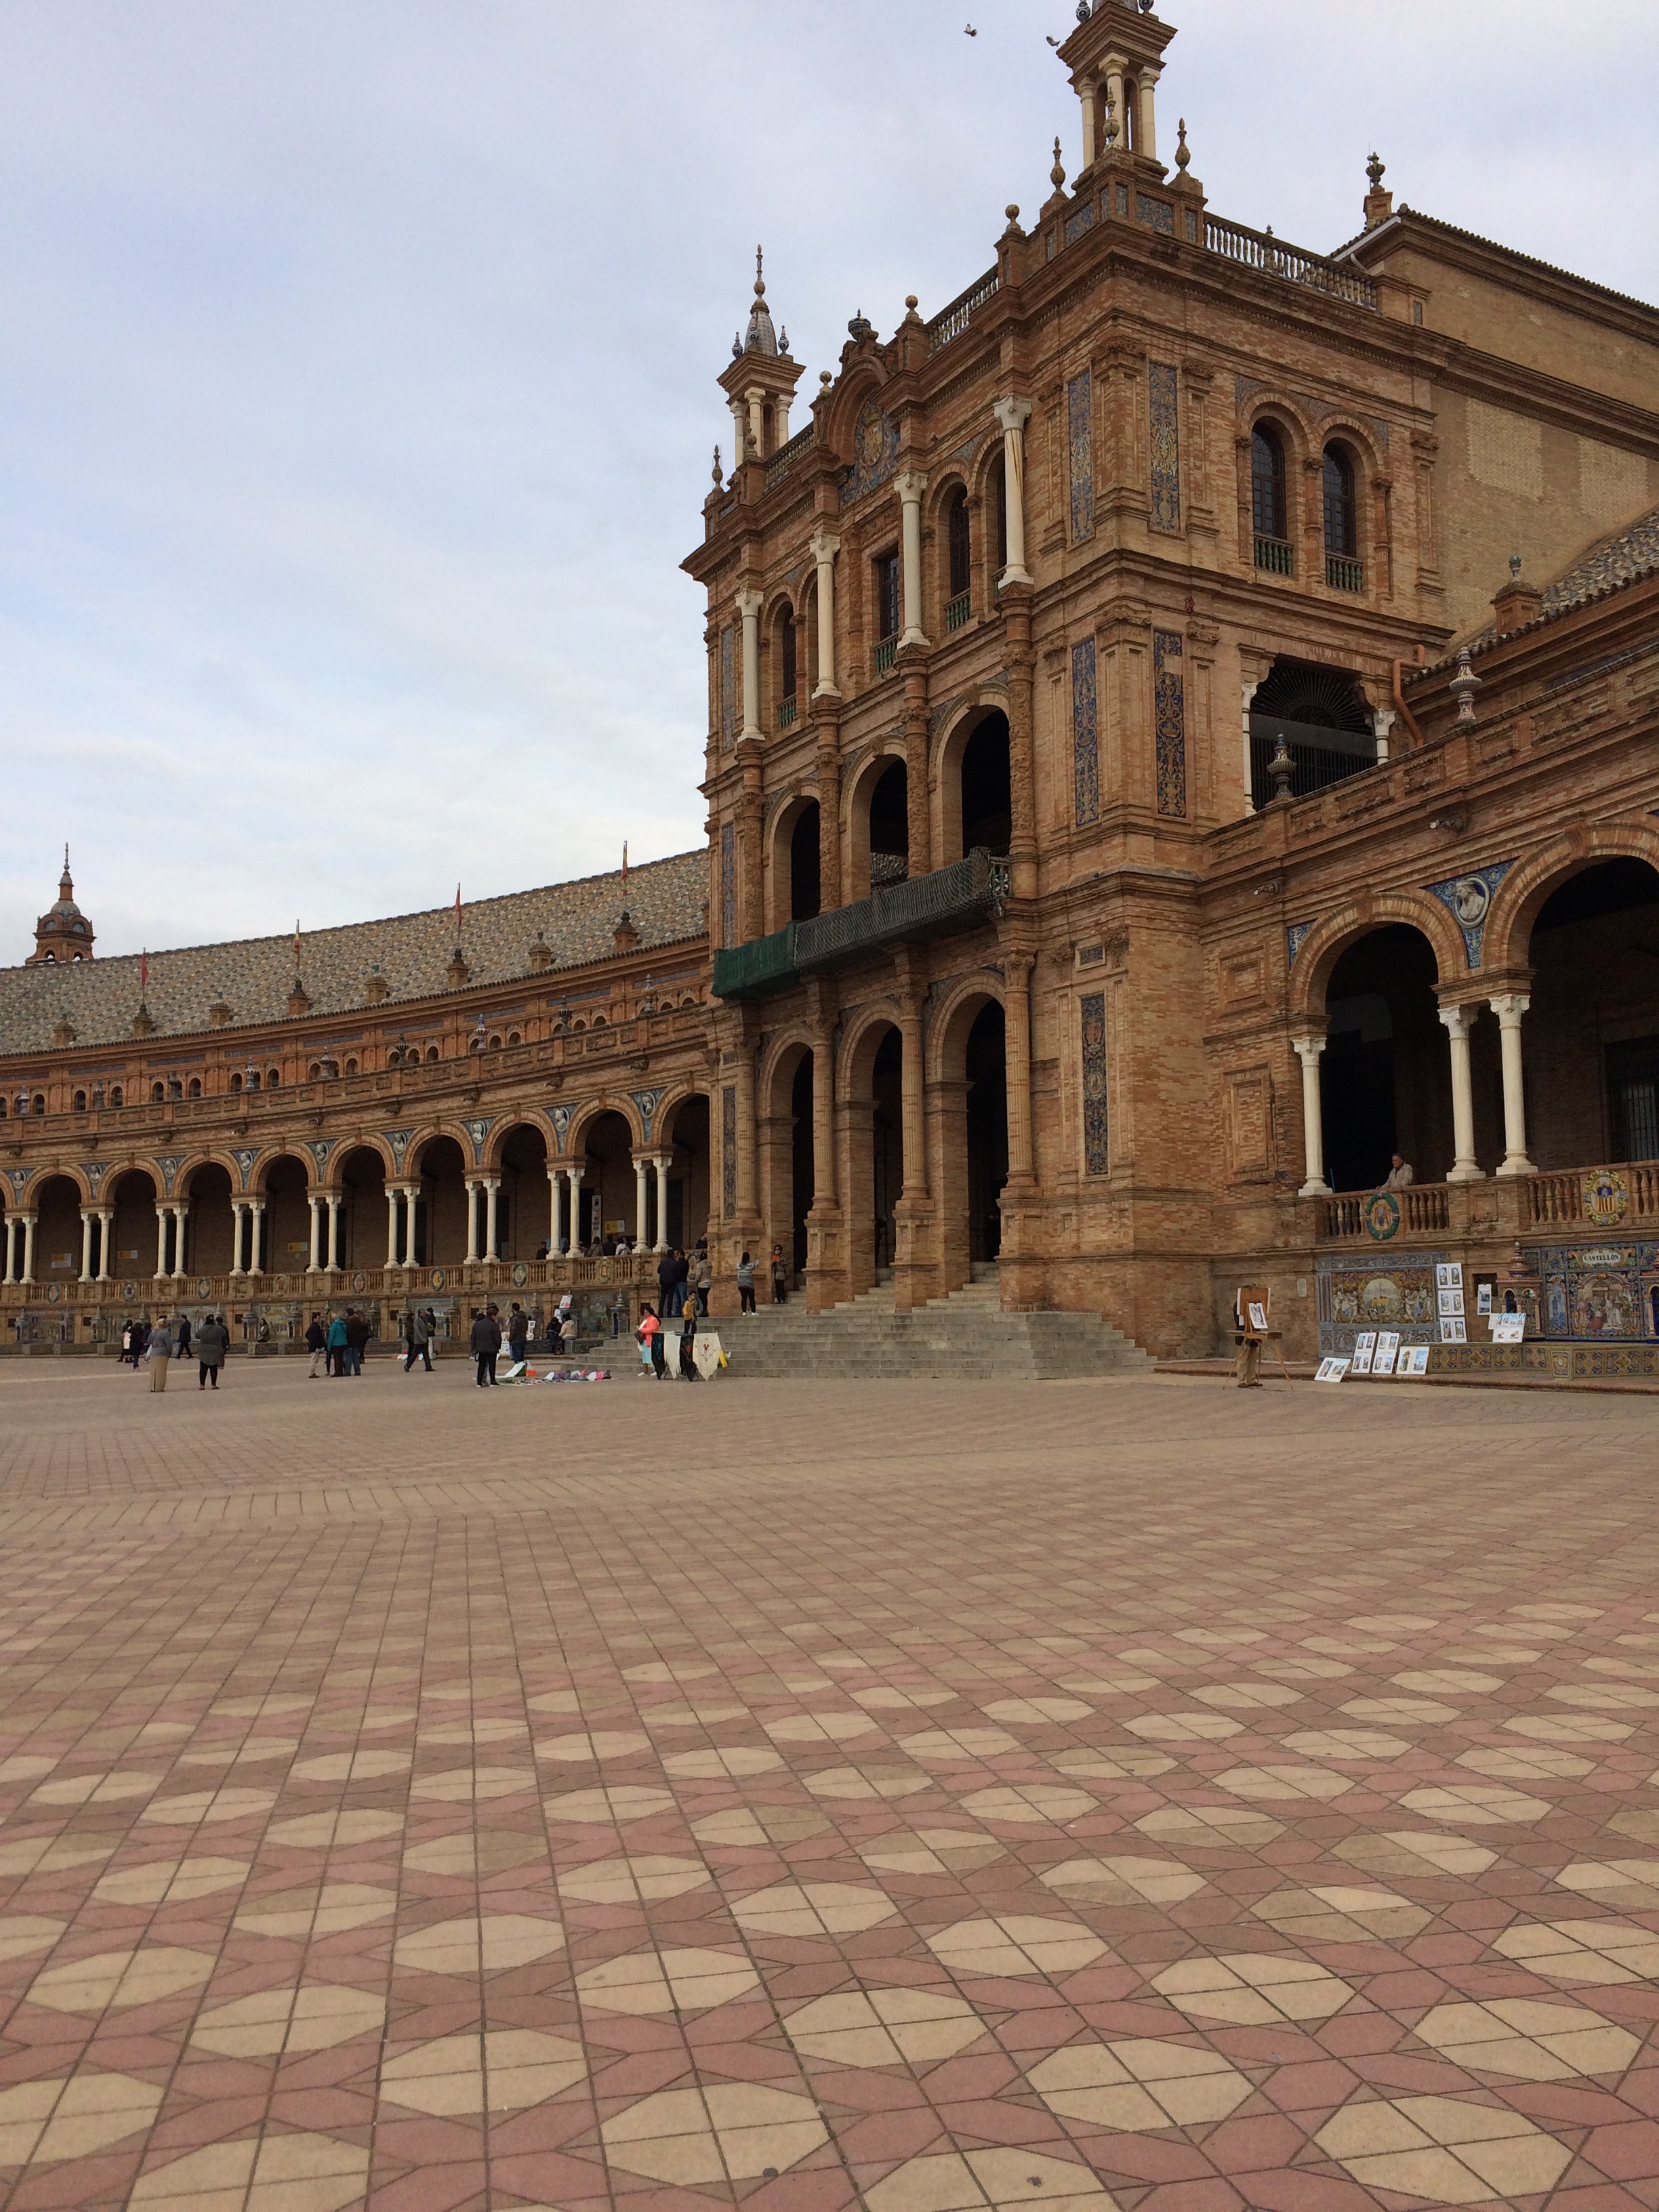 Image of the Plaza de Espana